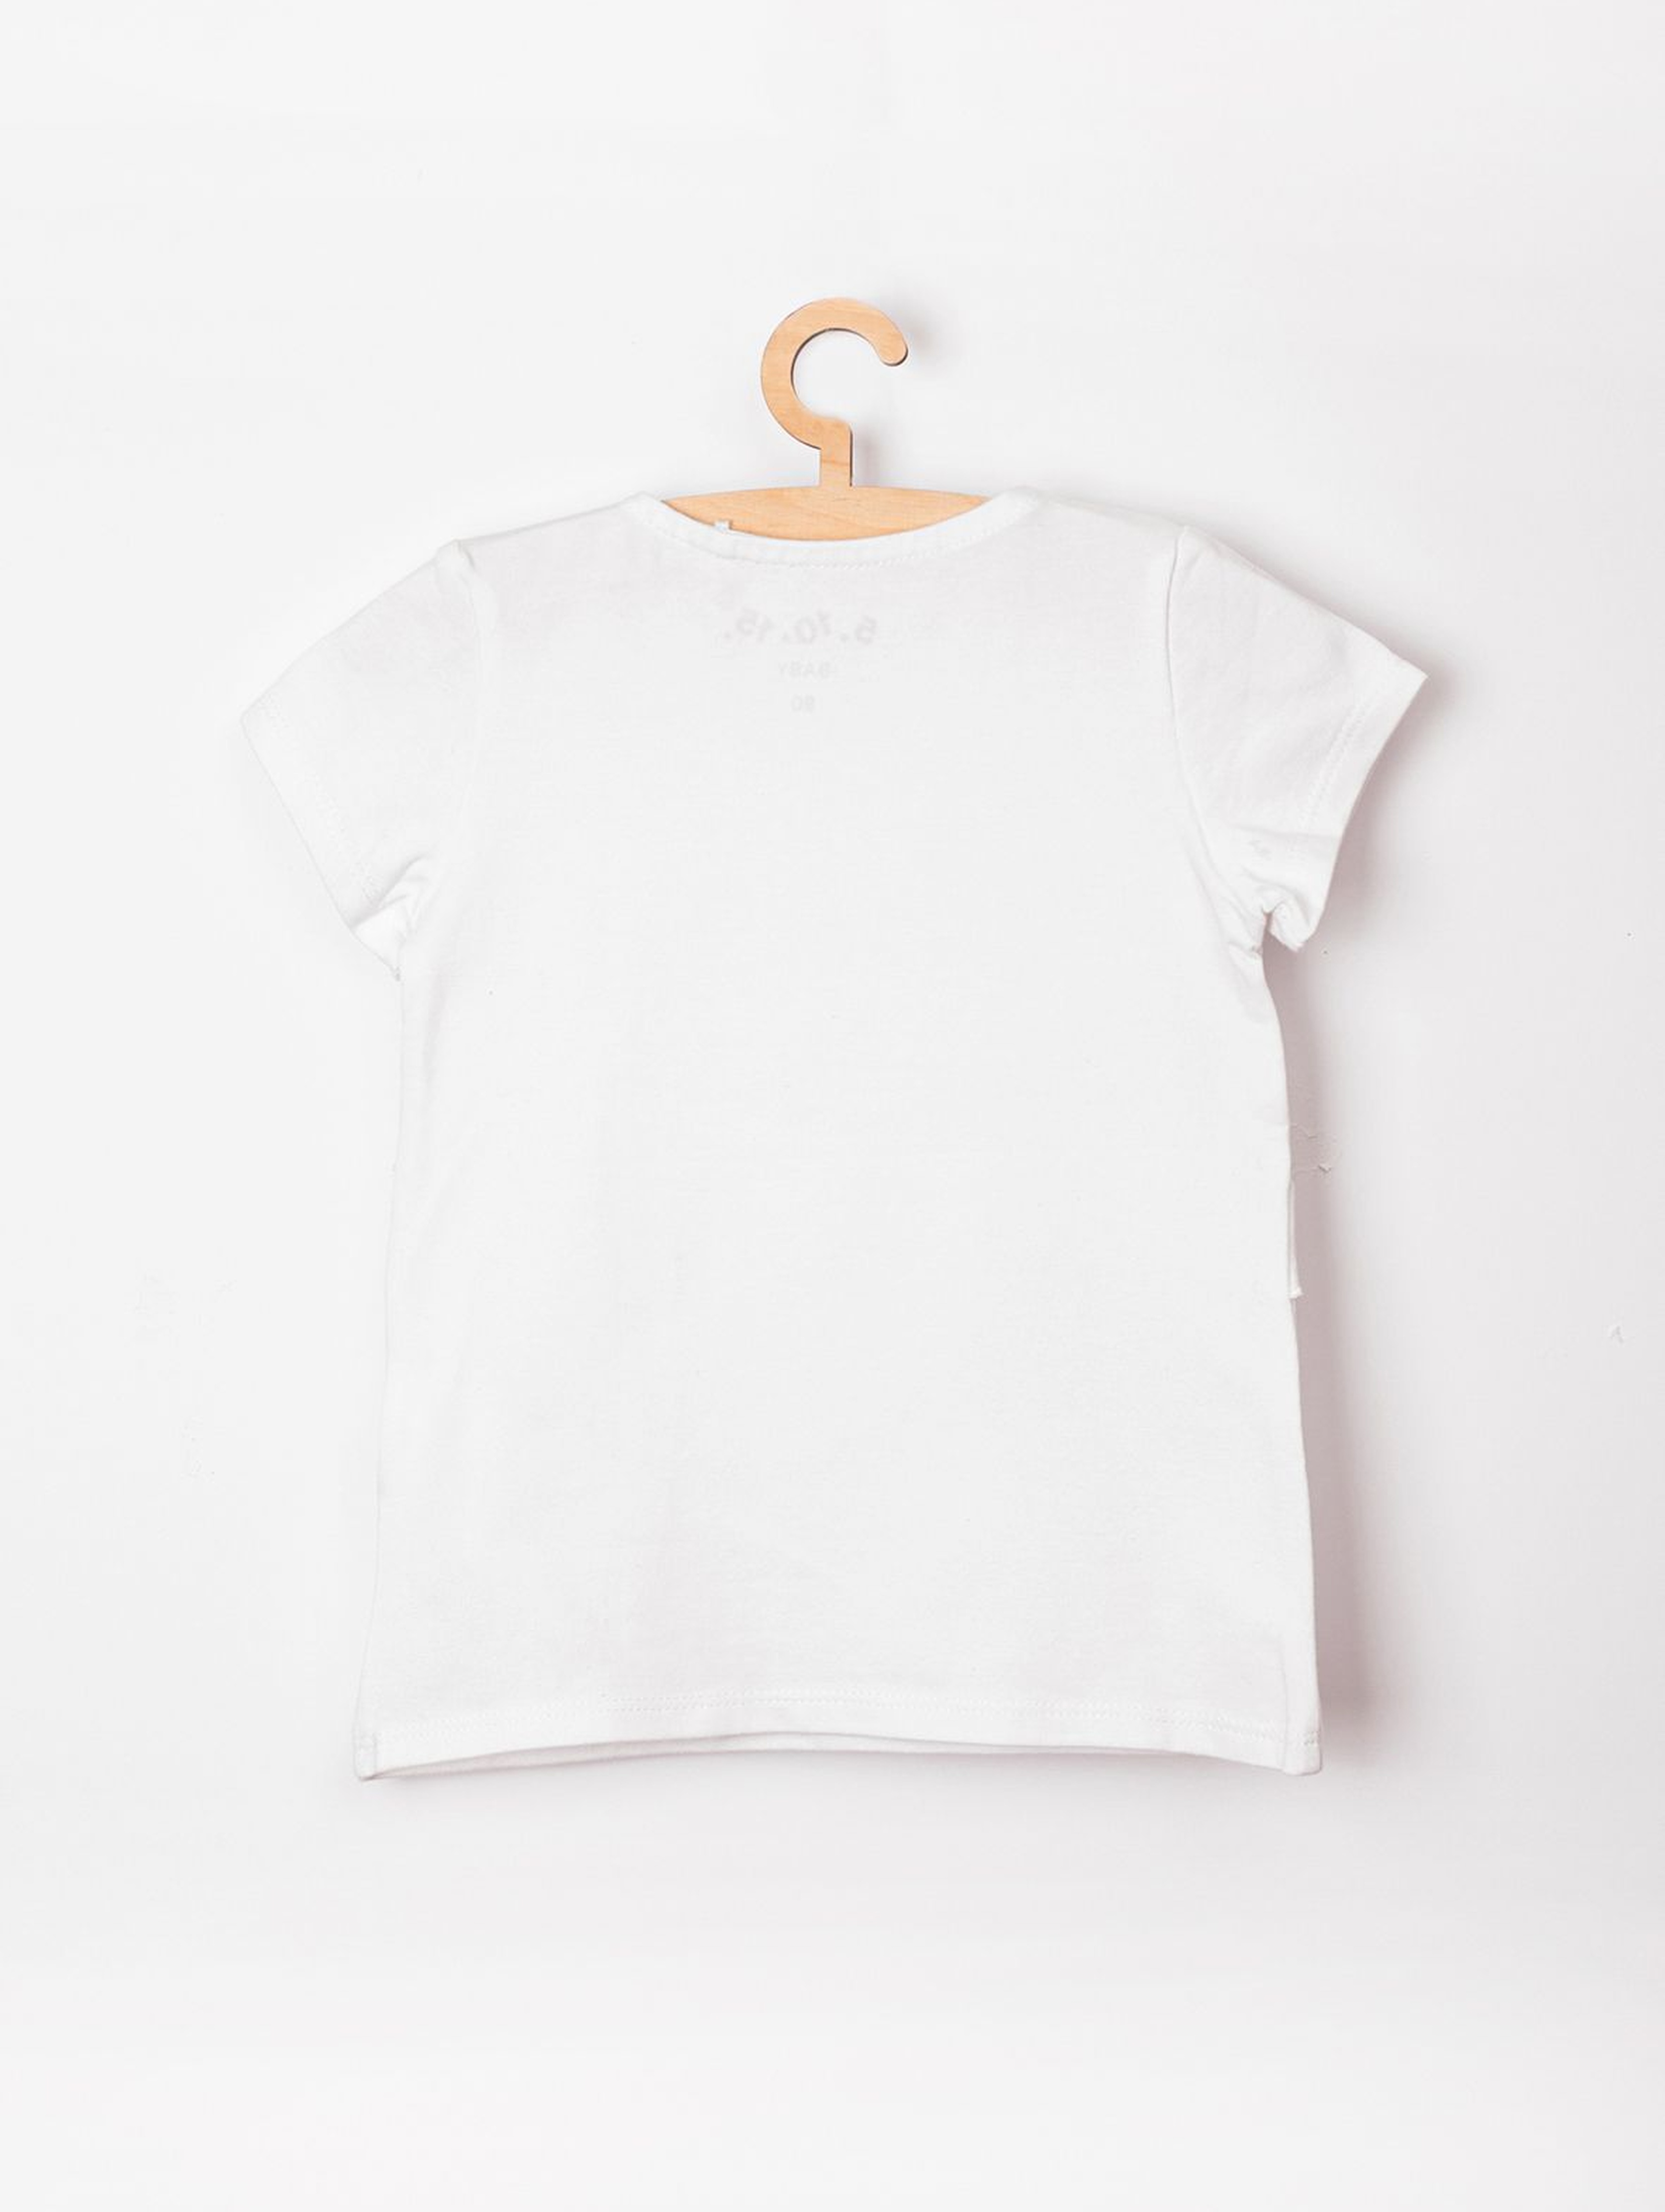 Koszulka niemowlęca biała z falbanką